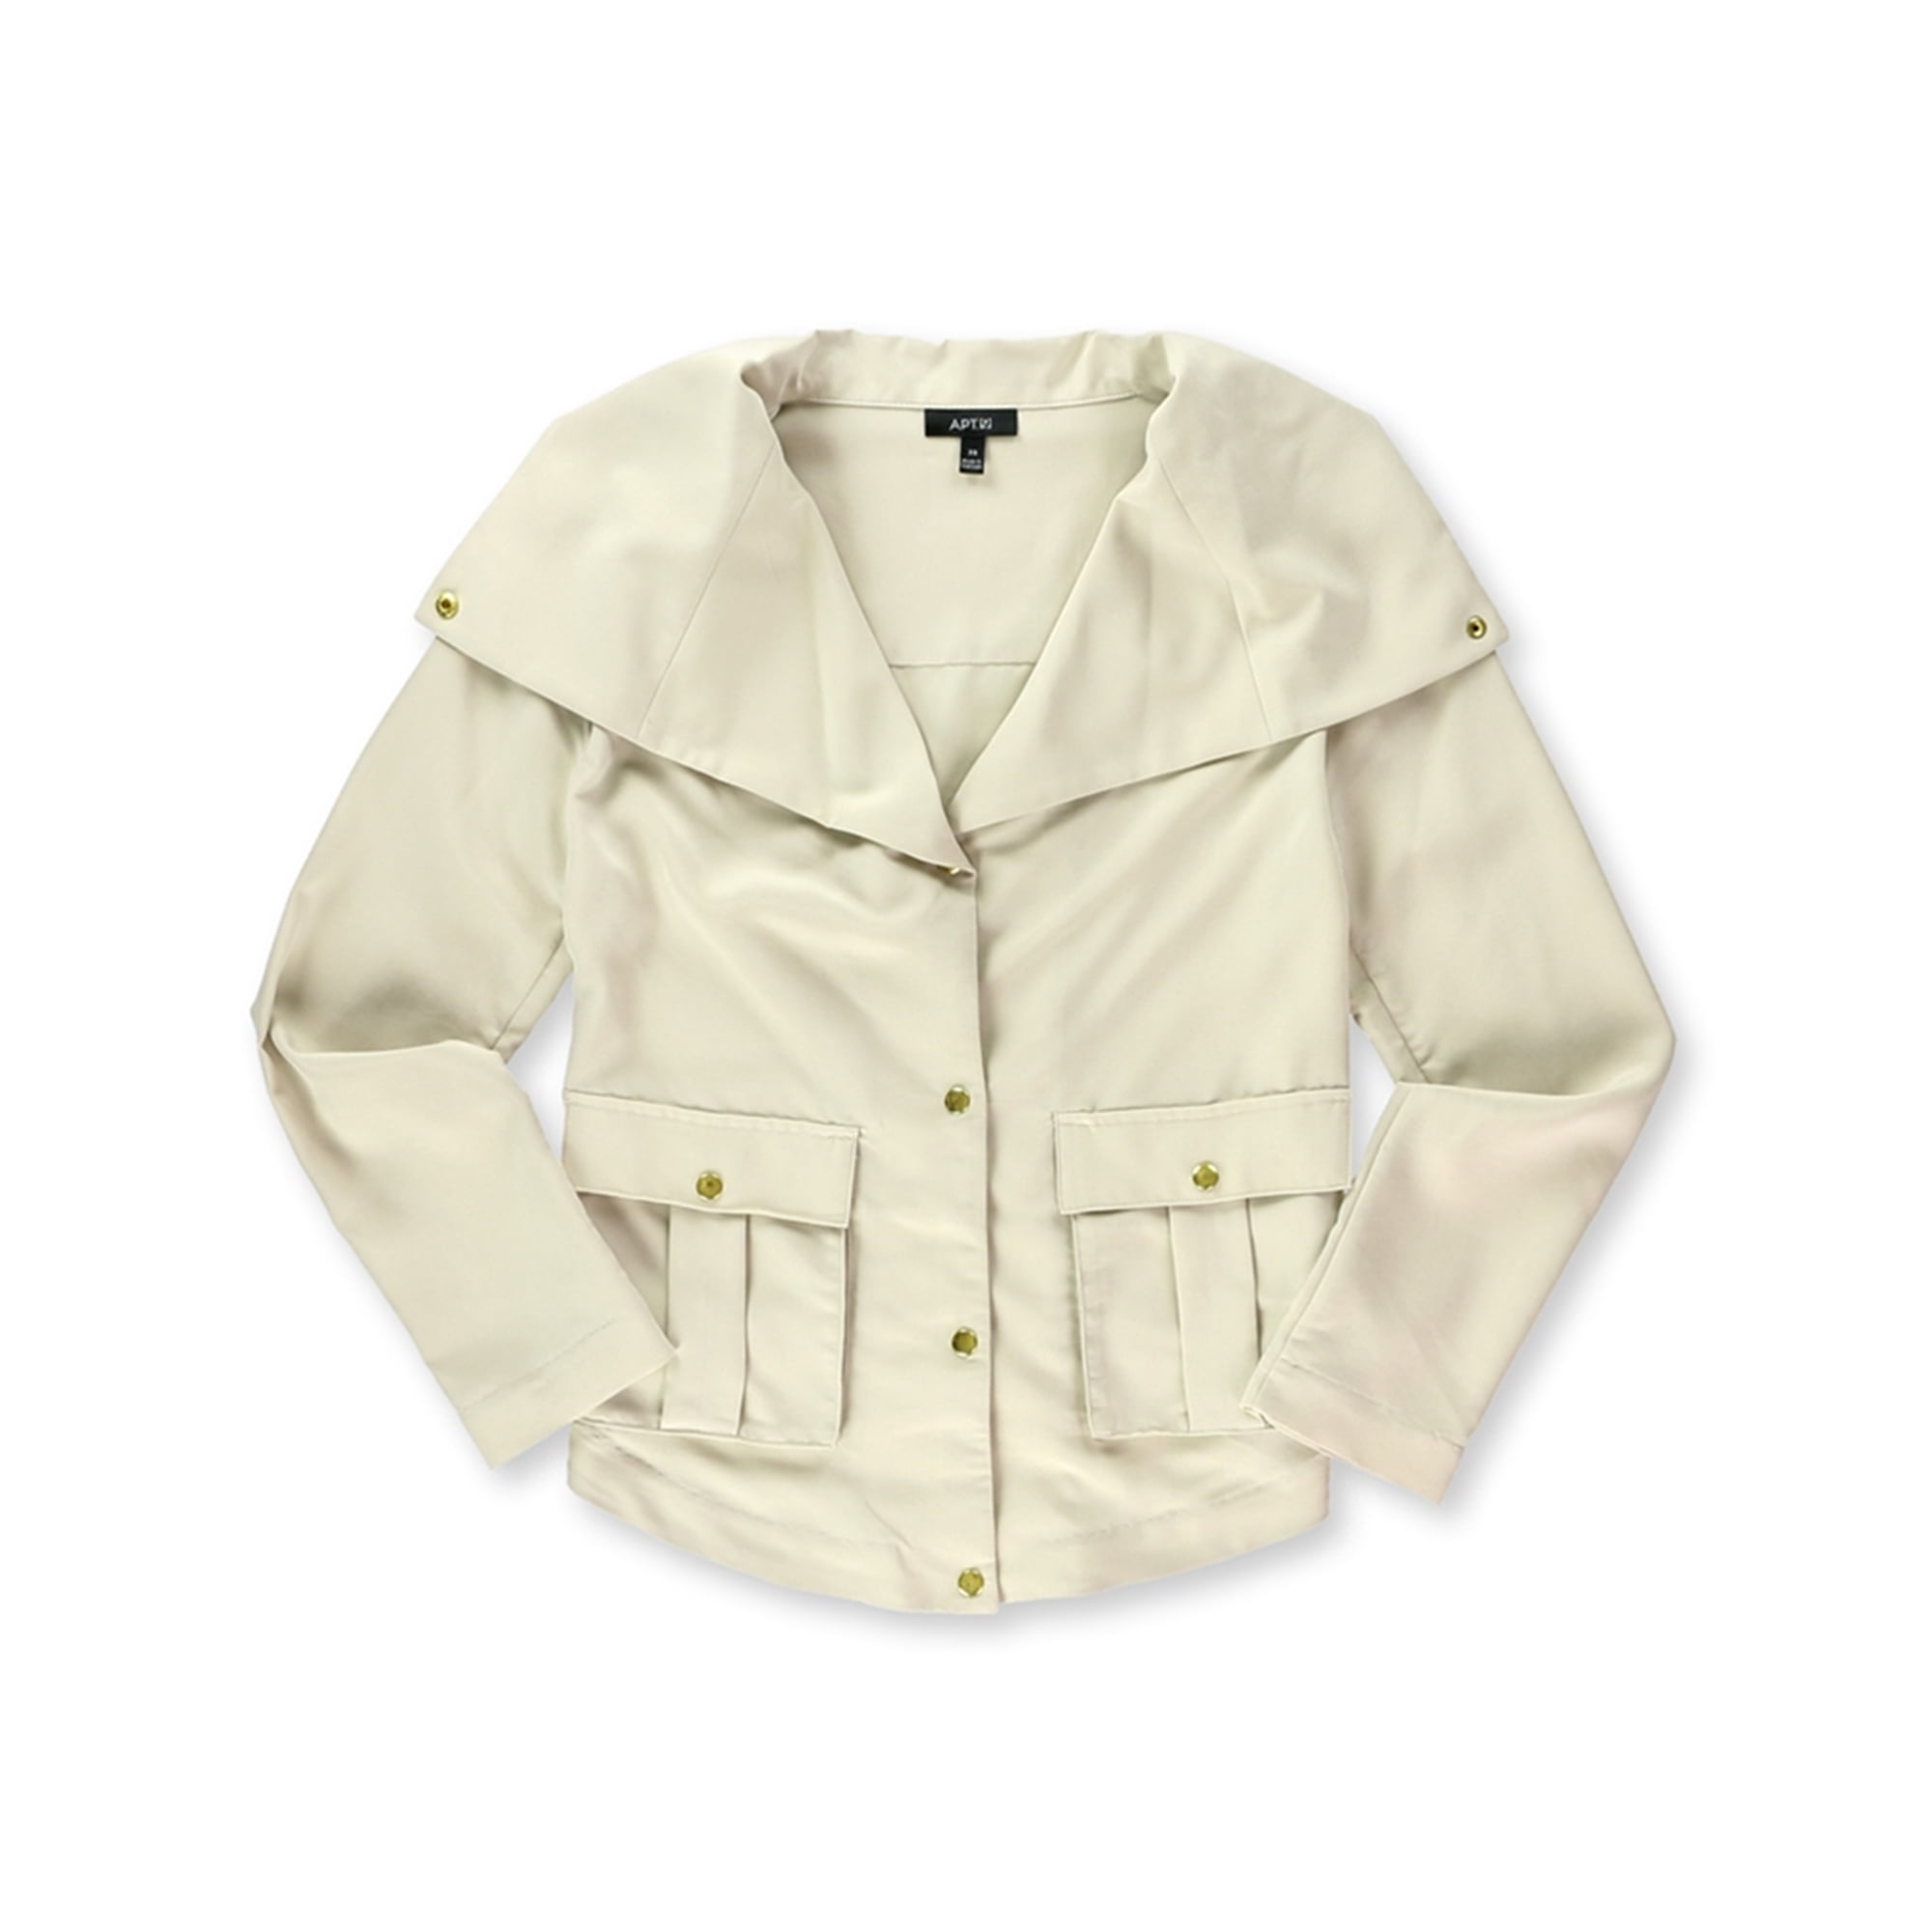  A2Z 4 Kids Baseball Plain Jacket Varsity Style Coat - B.B Plain  Jacket baby Pink-5-6: Clothing, Shoes & Jewelry